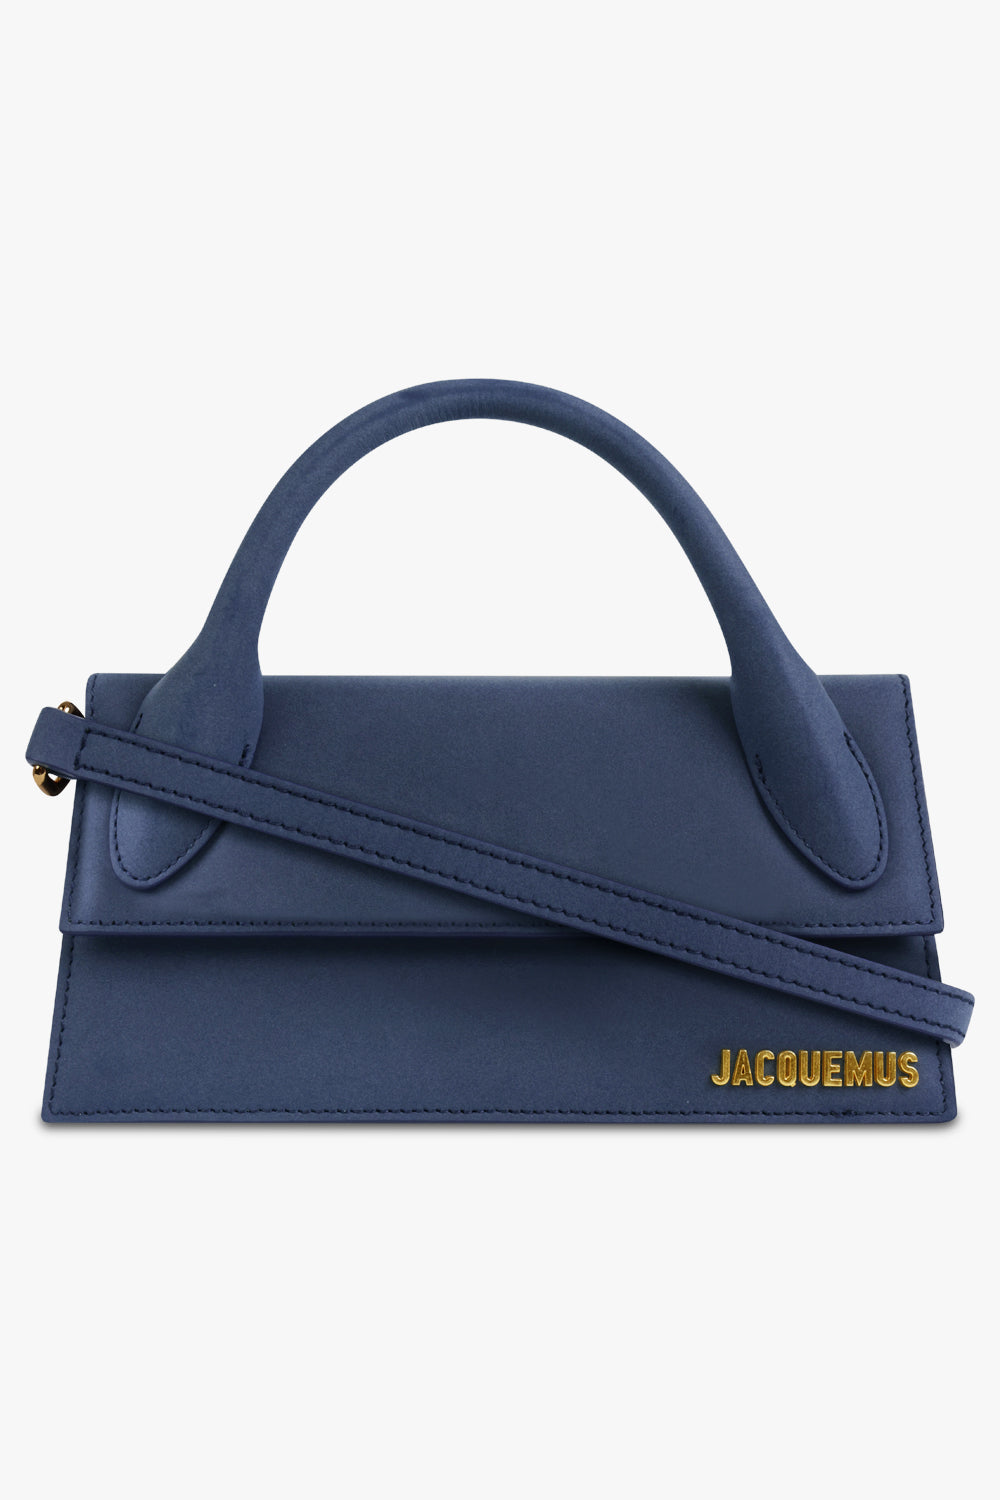 Jacquemus Brown Le Chouchou 'Le Chiquito Long' Bag - ShopStyle